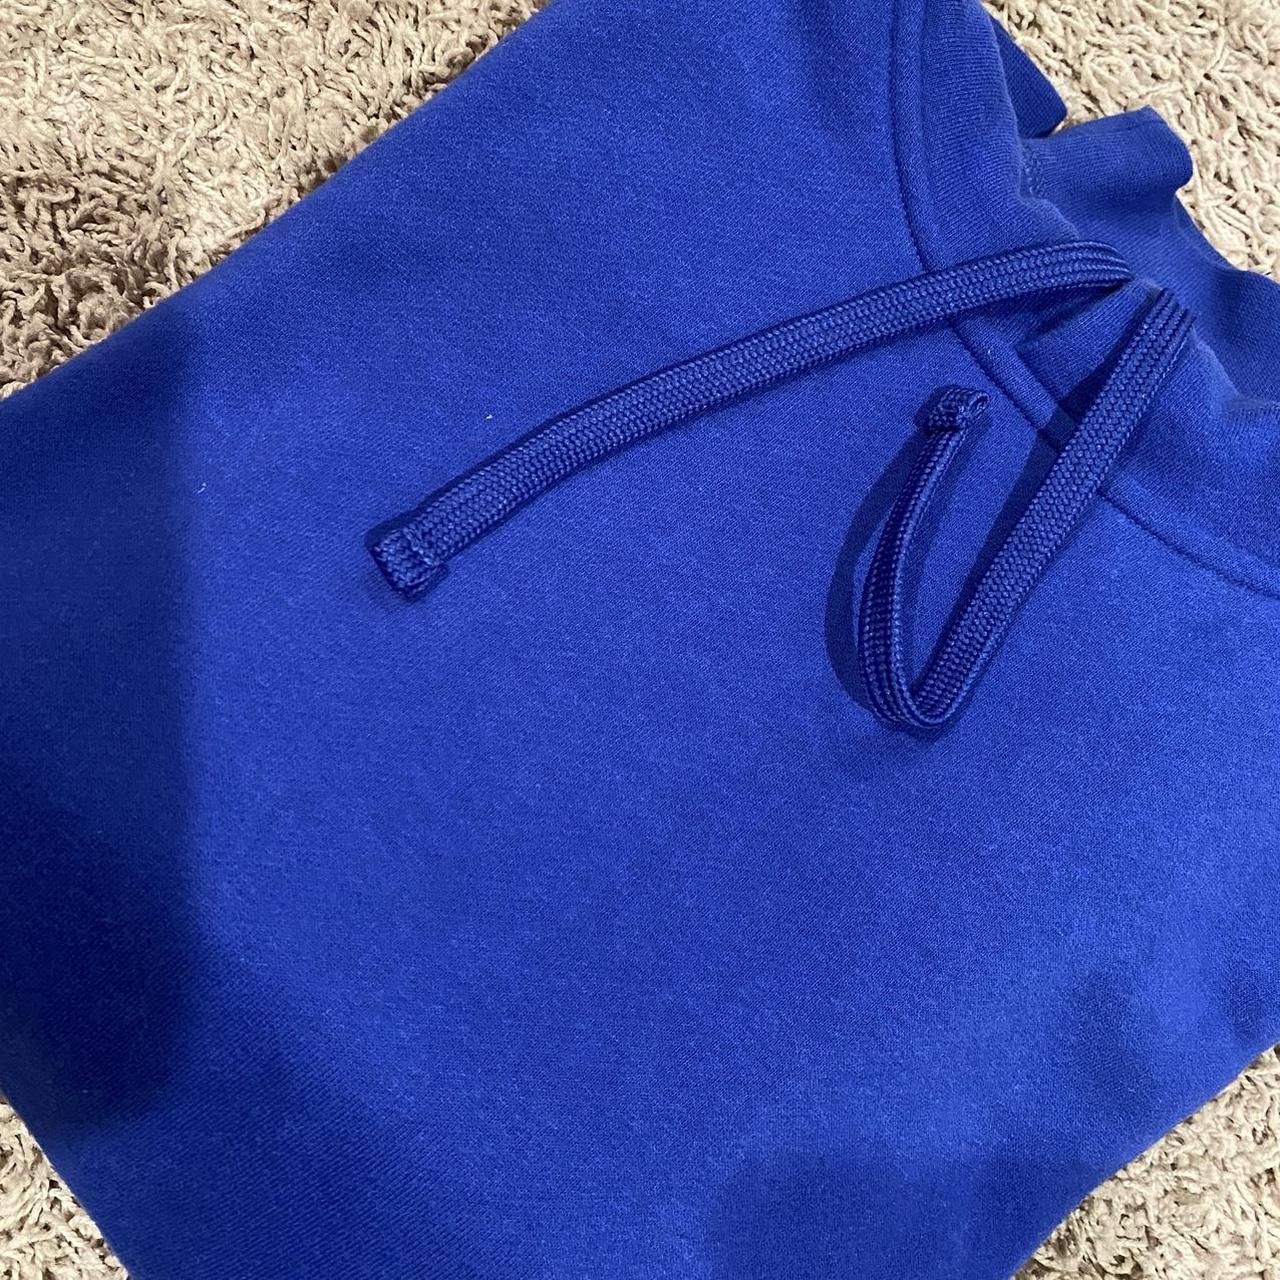 Tek Gear grey ultra soft fleece sweatshirt size XL. - Depop